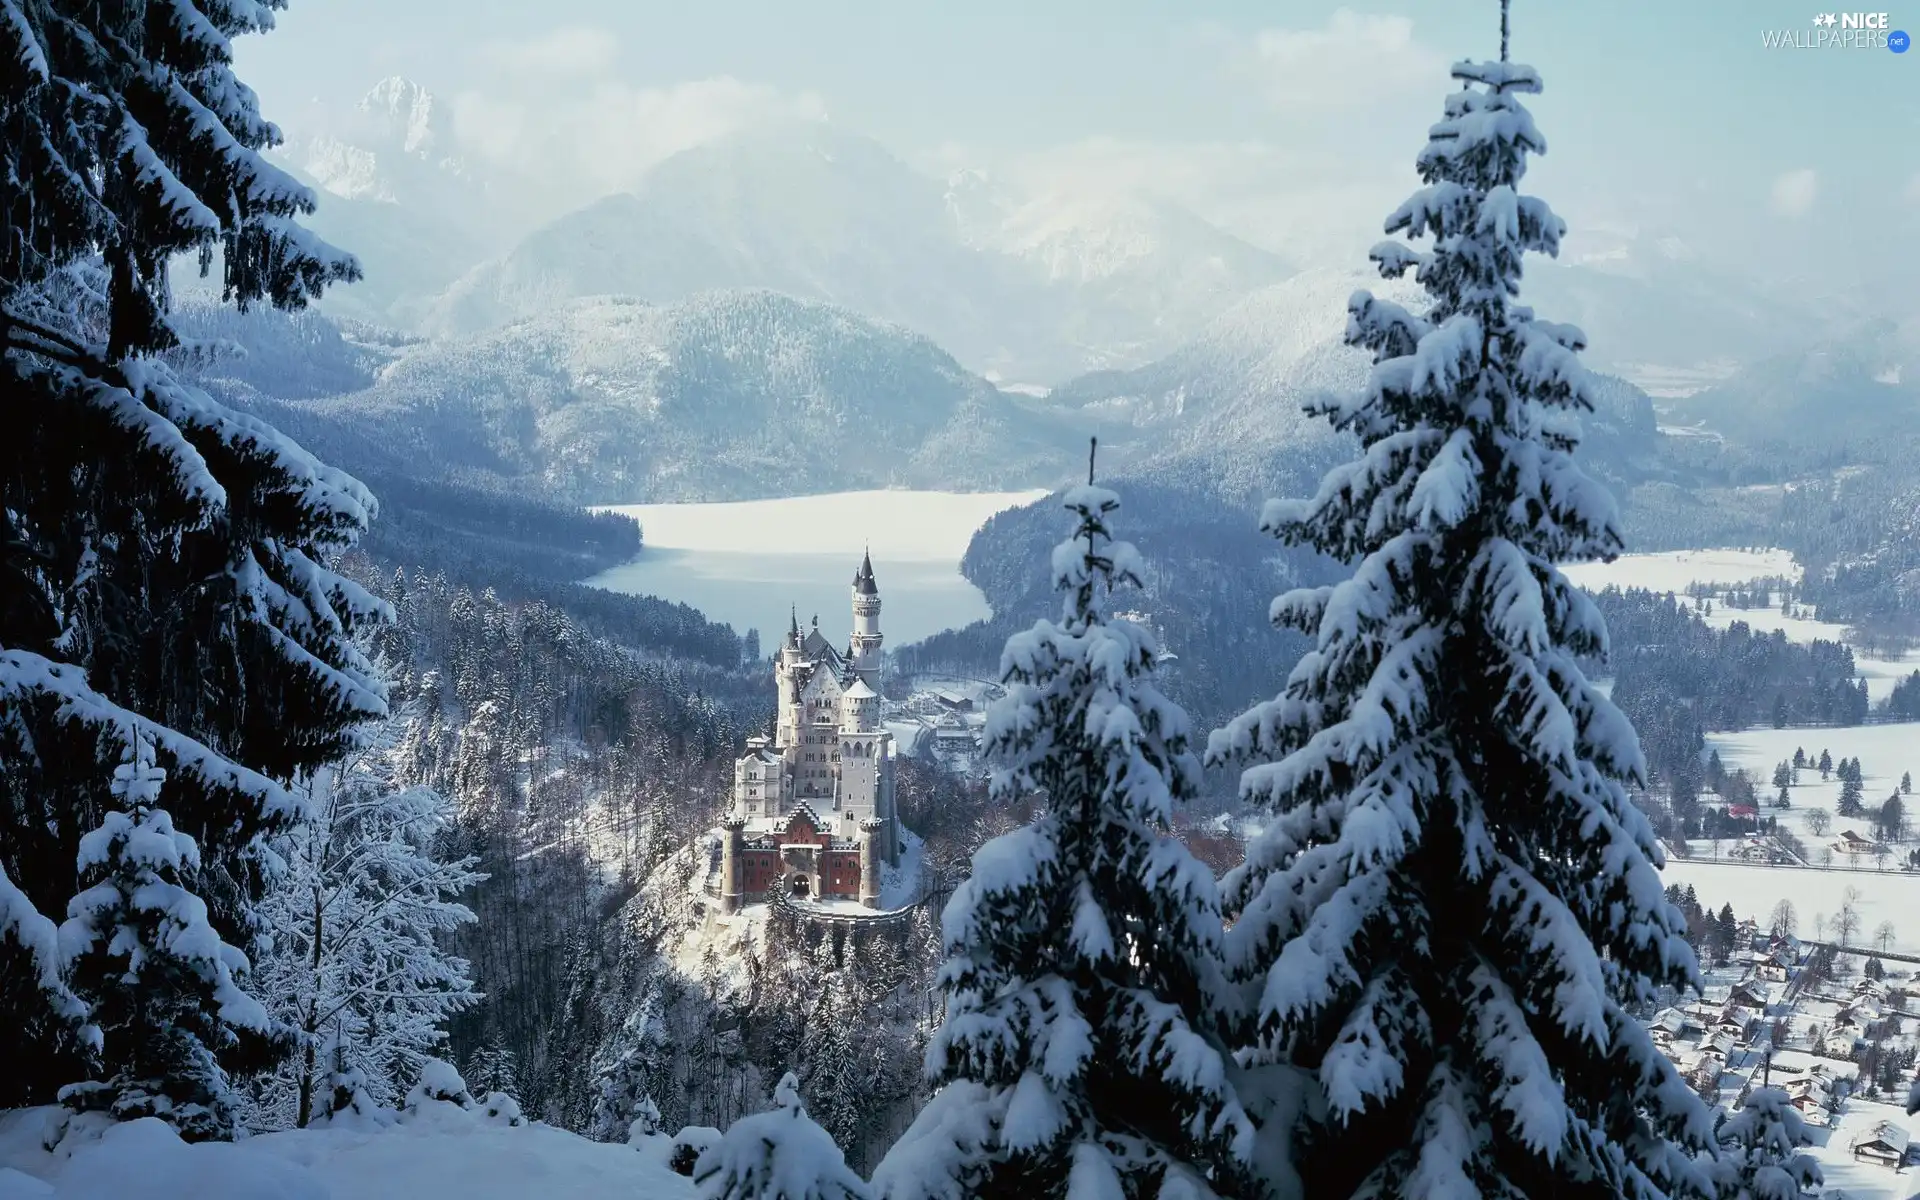 Castle, winter, Germany, Neuschwanstein